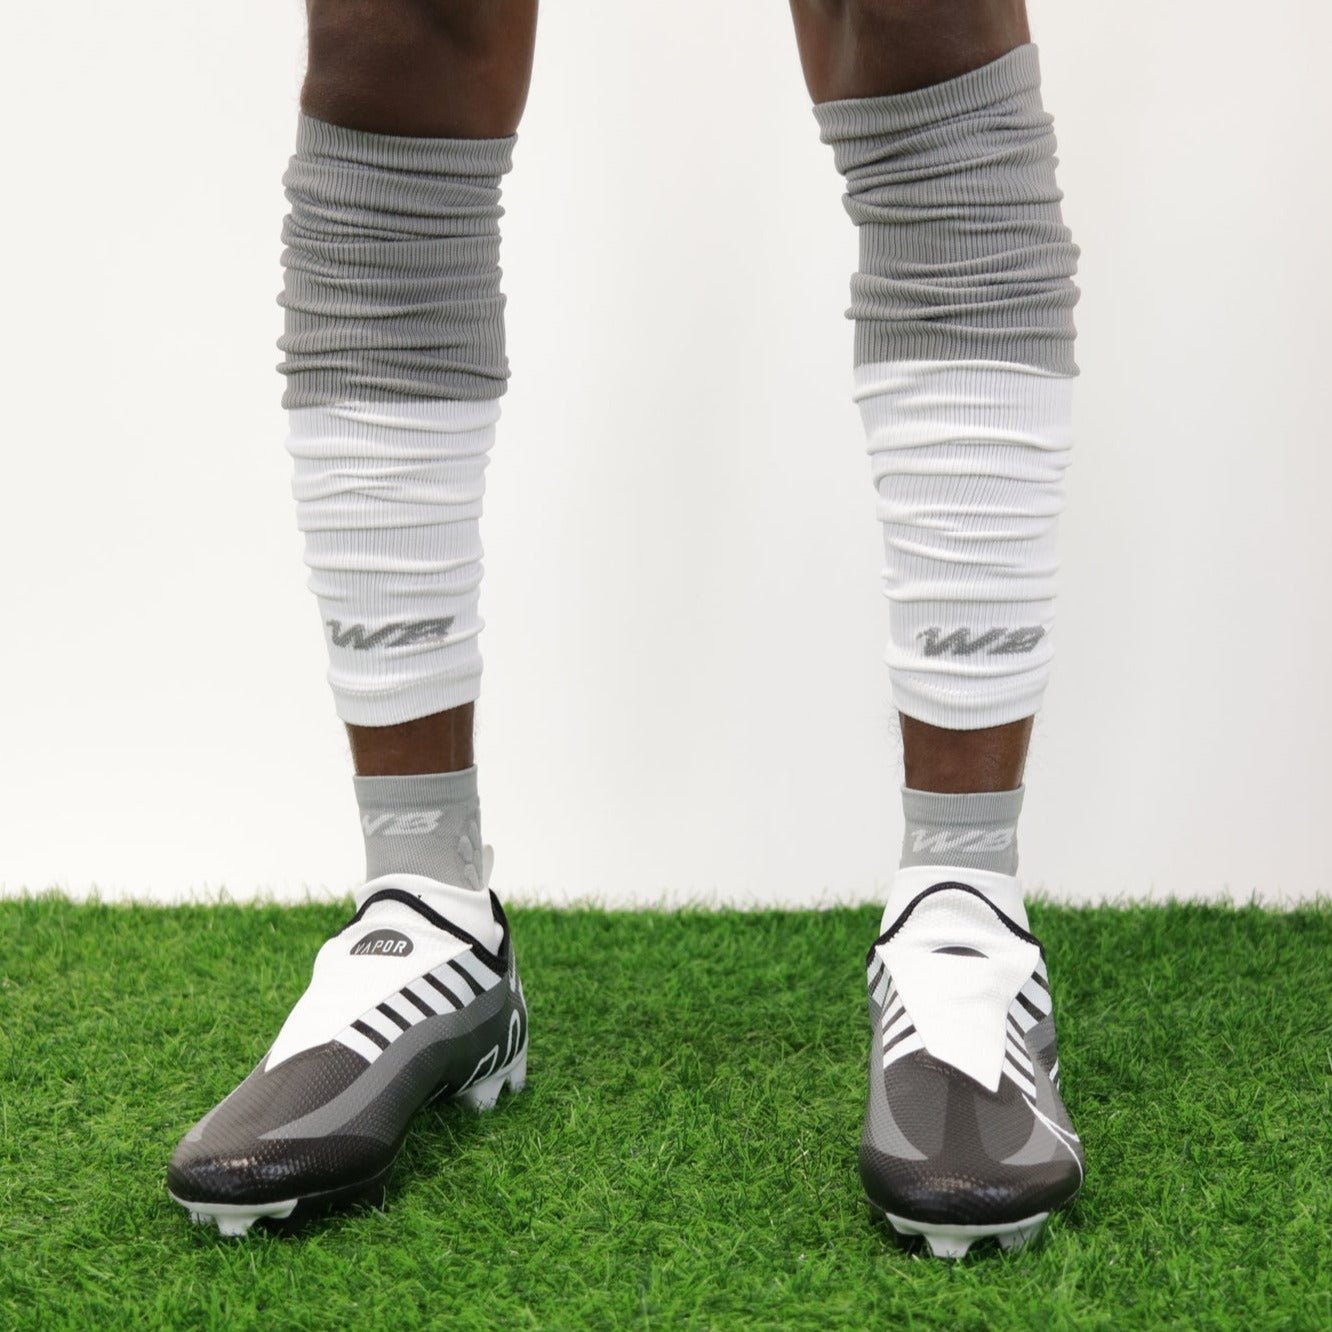 TWO-TONE FOOTBALL LEG SLEEVES 2.0 (GREY/WHITE)